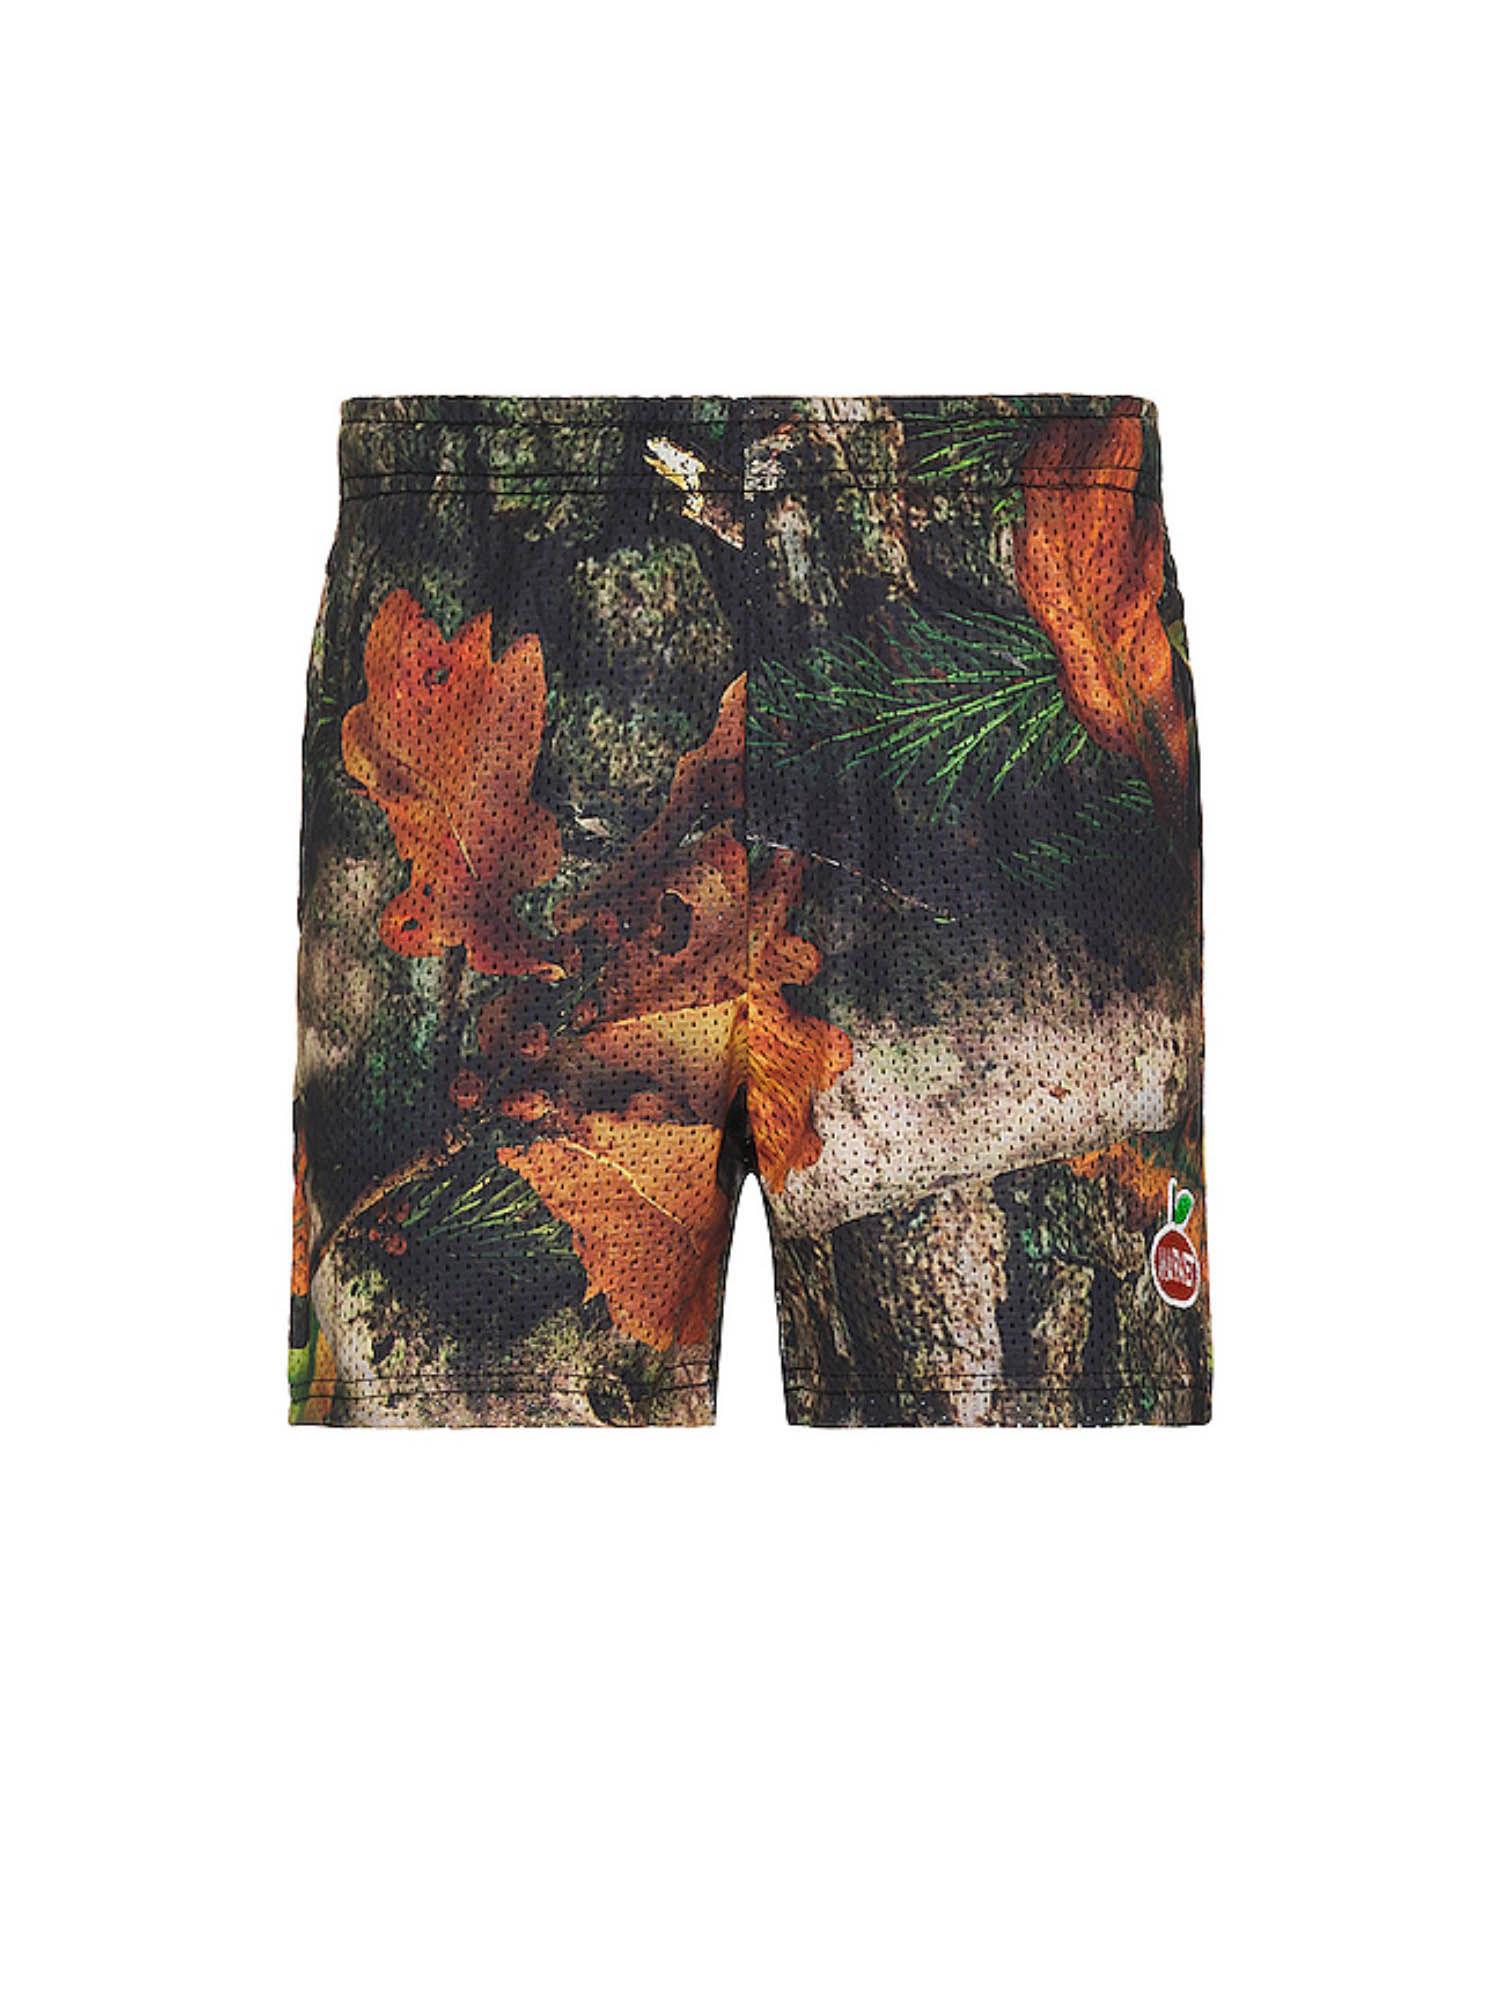 fauxtree mesh shorts